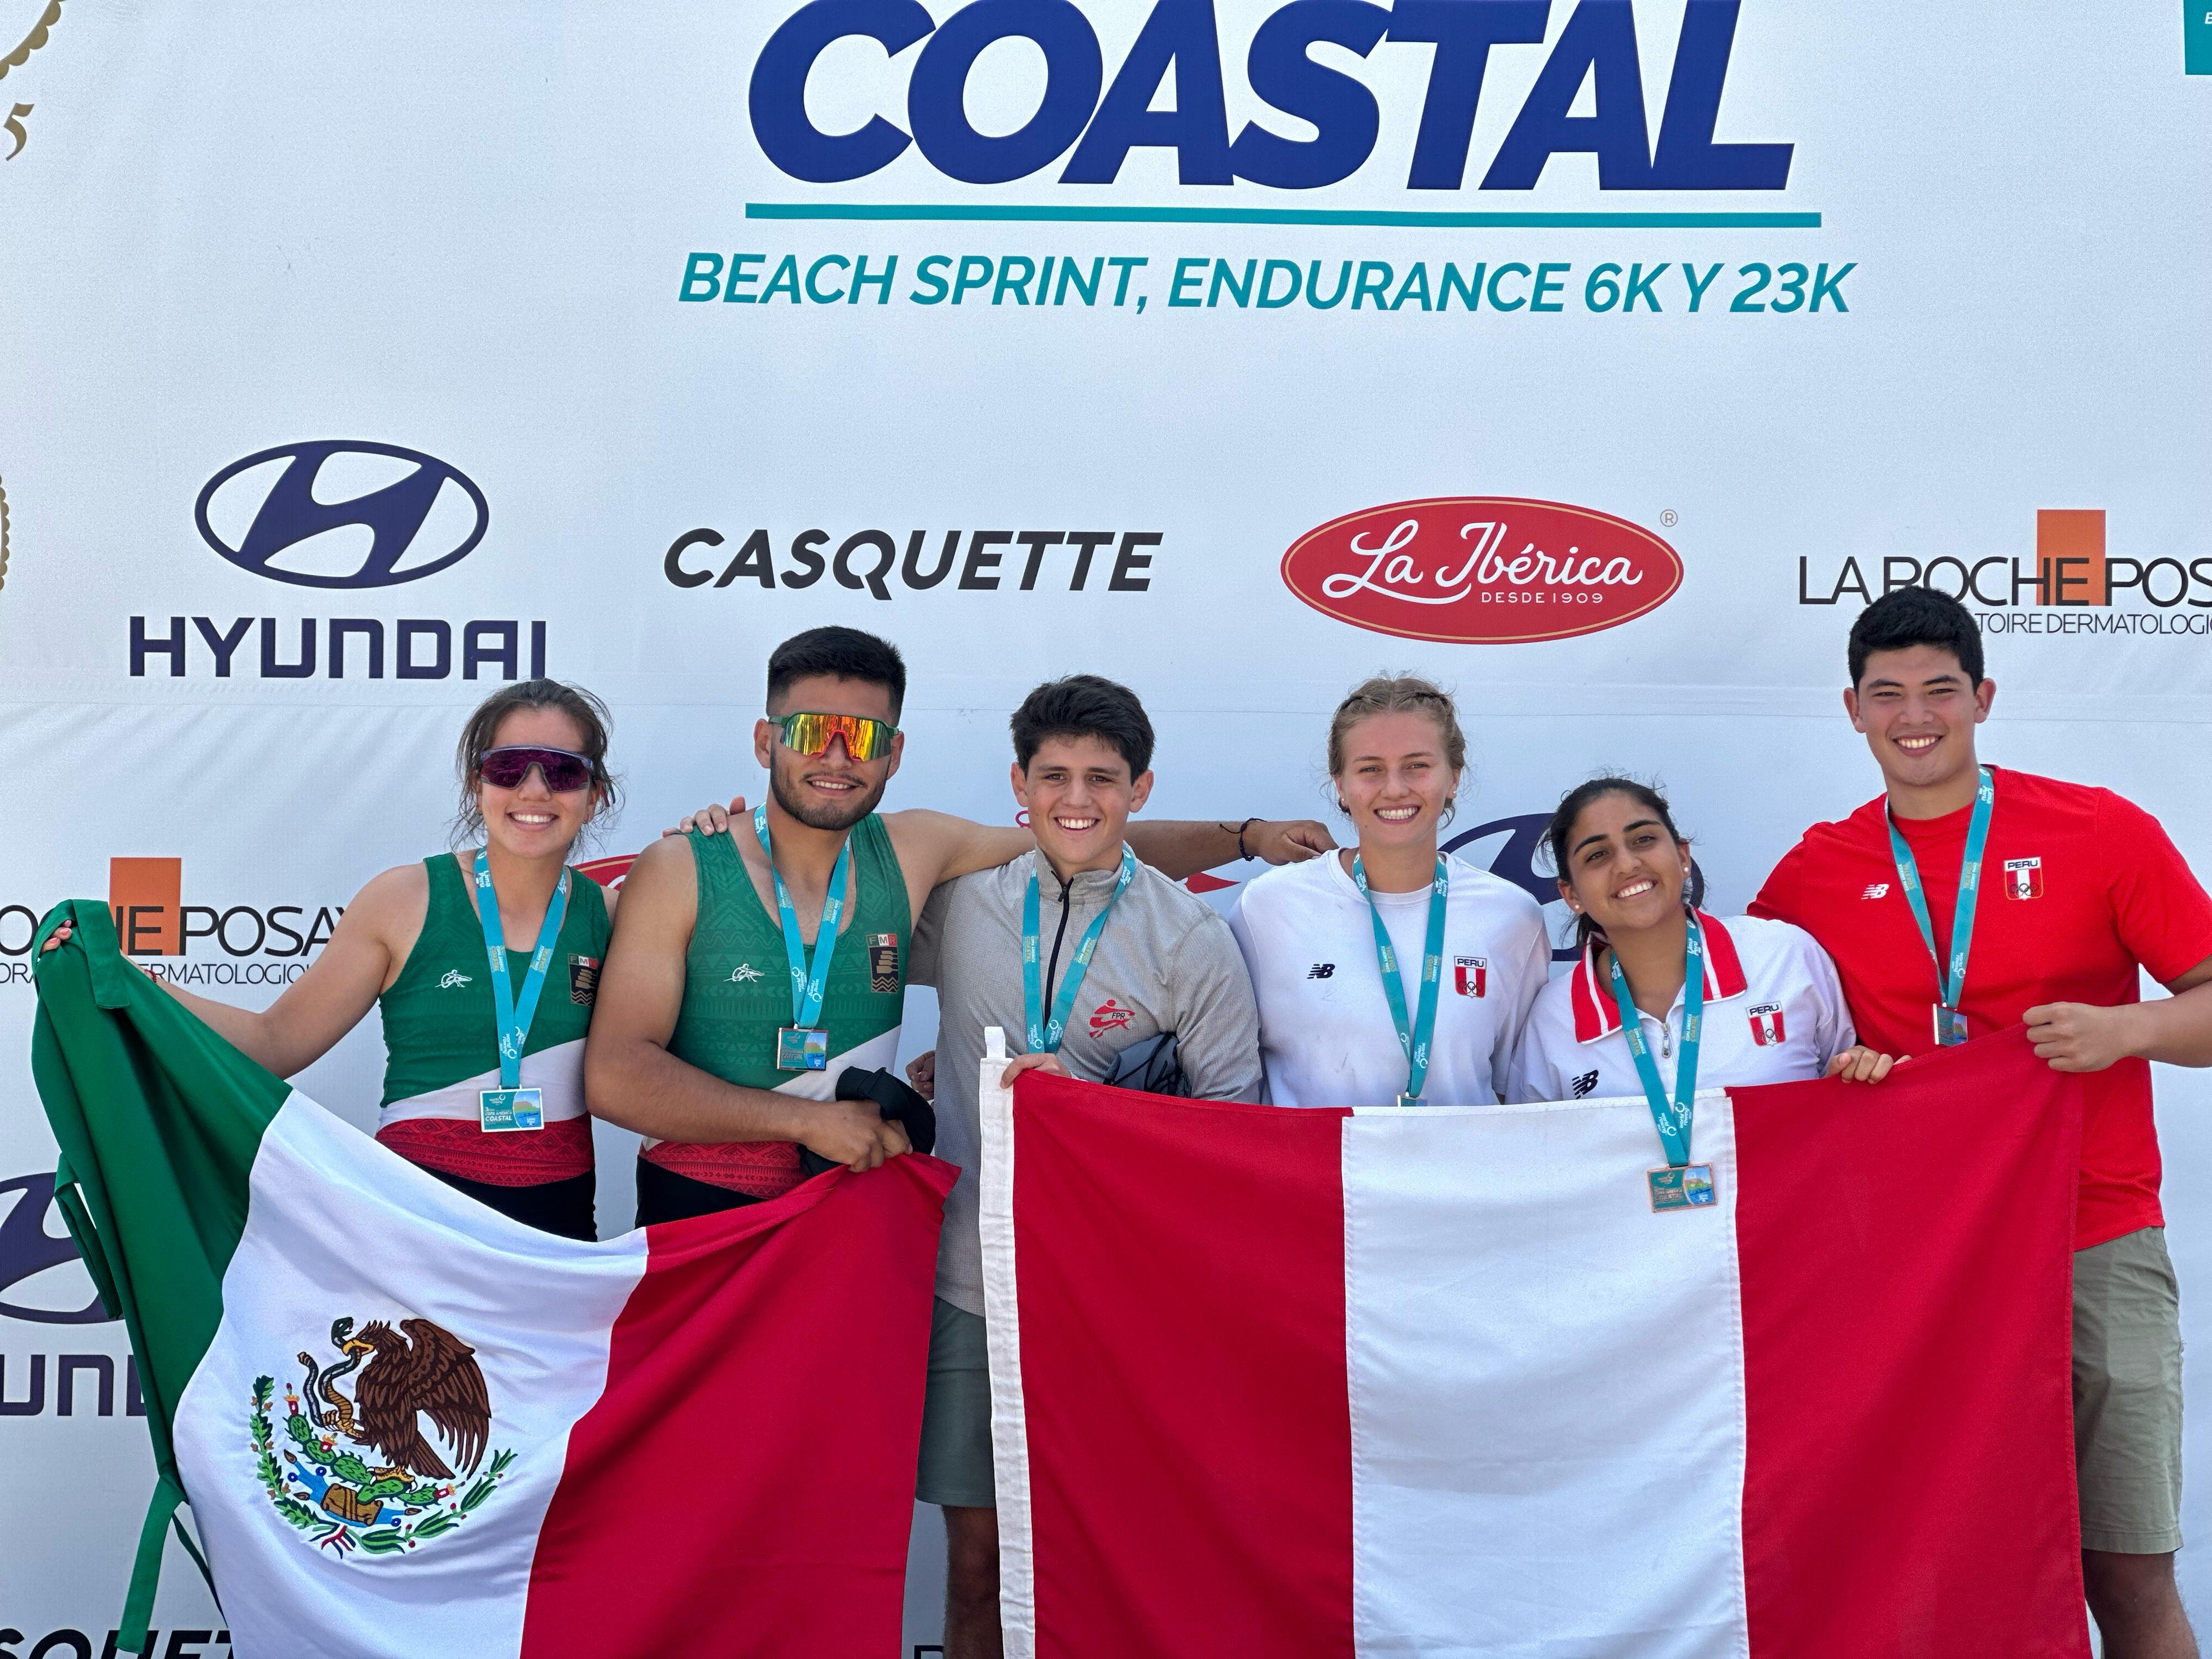 Los remeros Ximena Castellanos y David Mota, ganaron tres medallas de plata, en individuales y mixtos, de la Tercera Copa América Coastal, celebrada en Perú. CORTESÍA